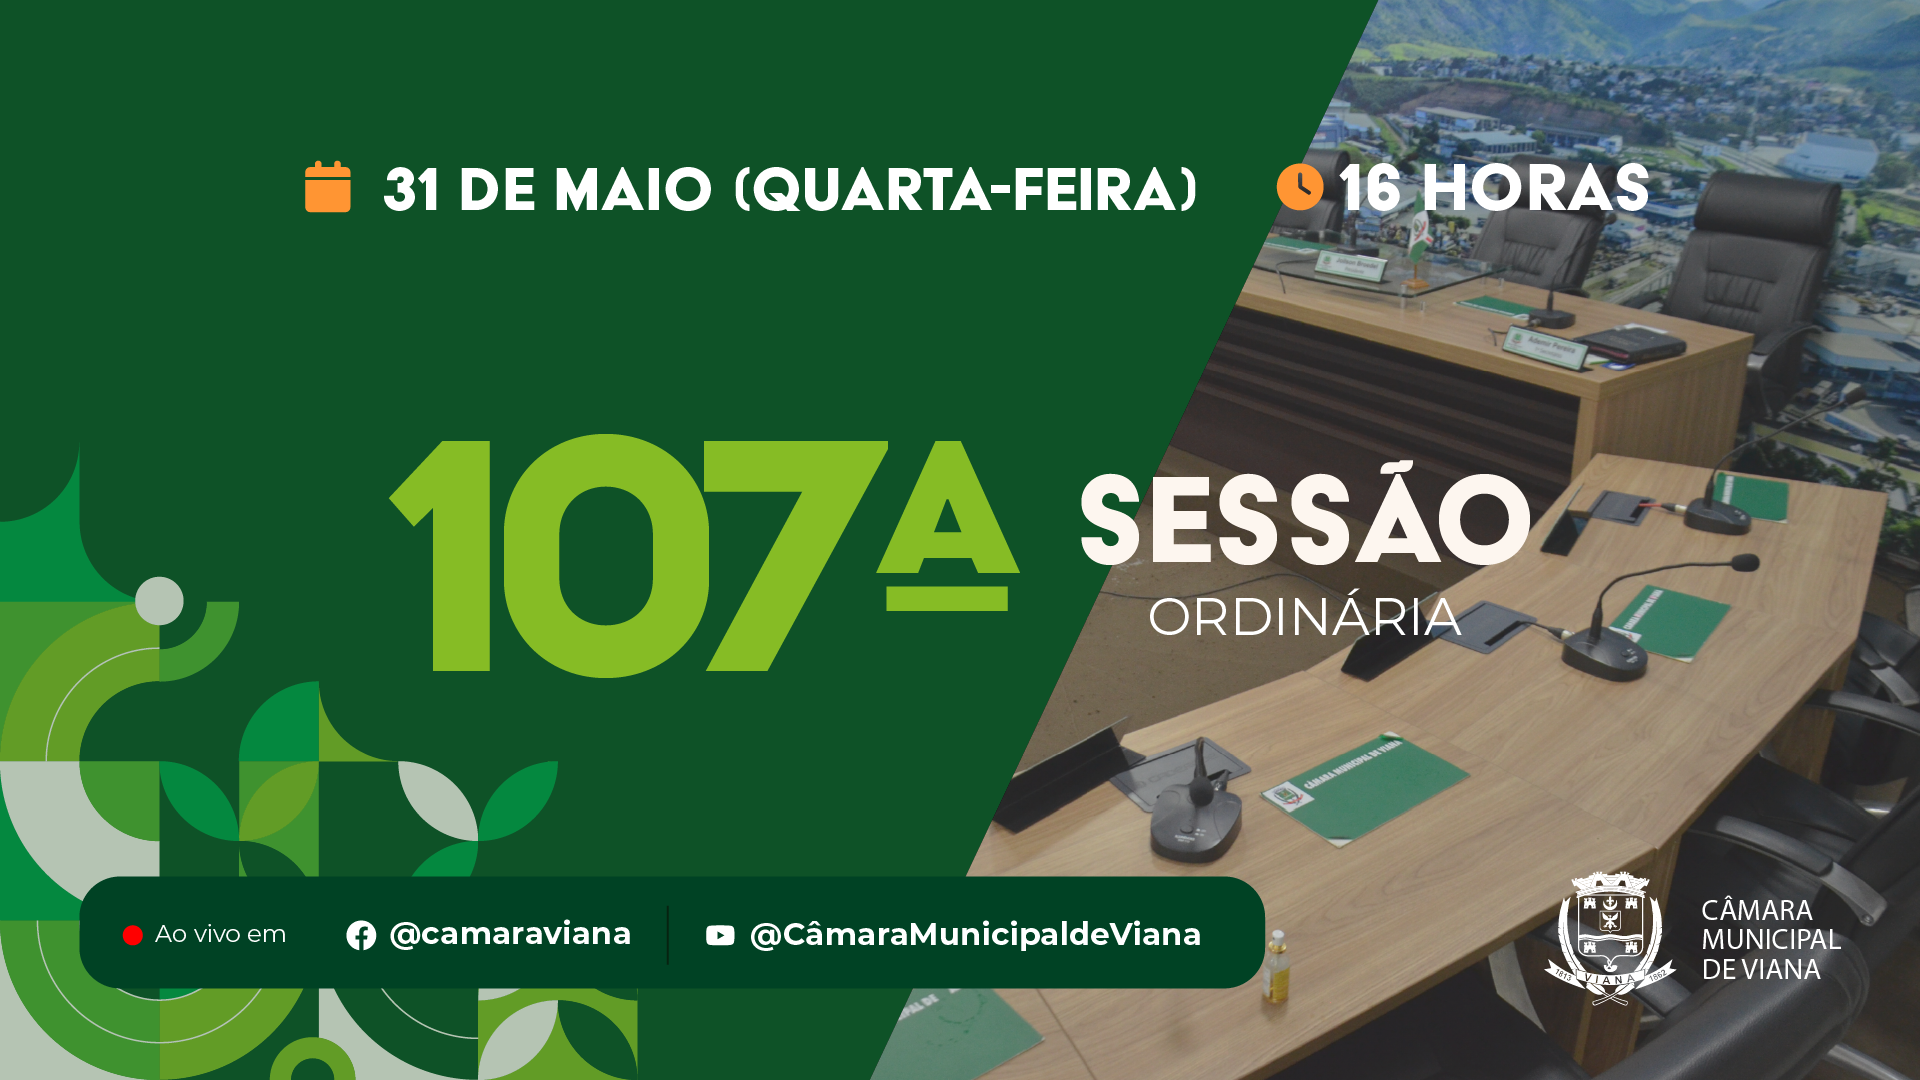 PAUTA DA CENTÉSIMA SÉTIMA (107ª) SESSÃO ORDINÁRIA 